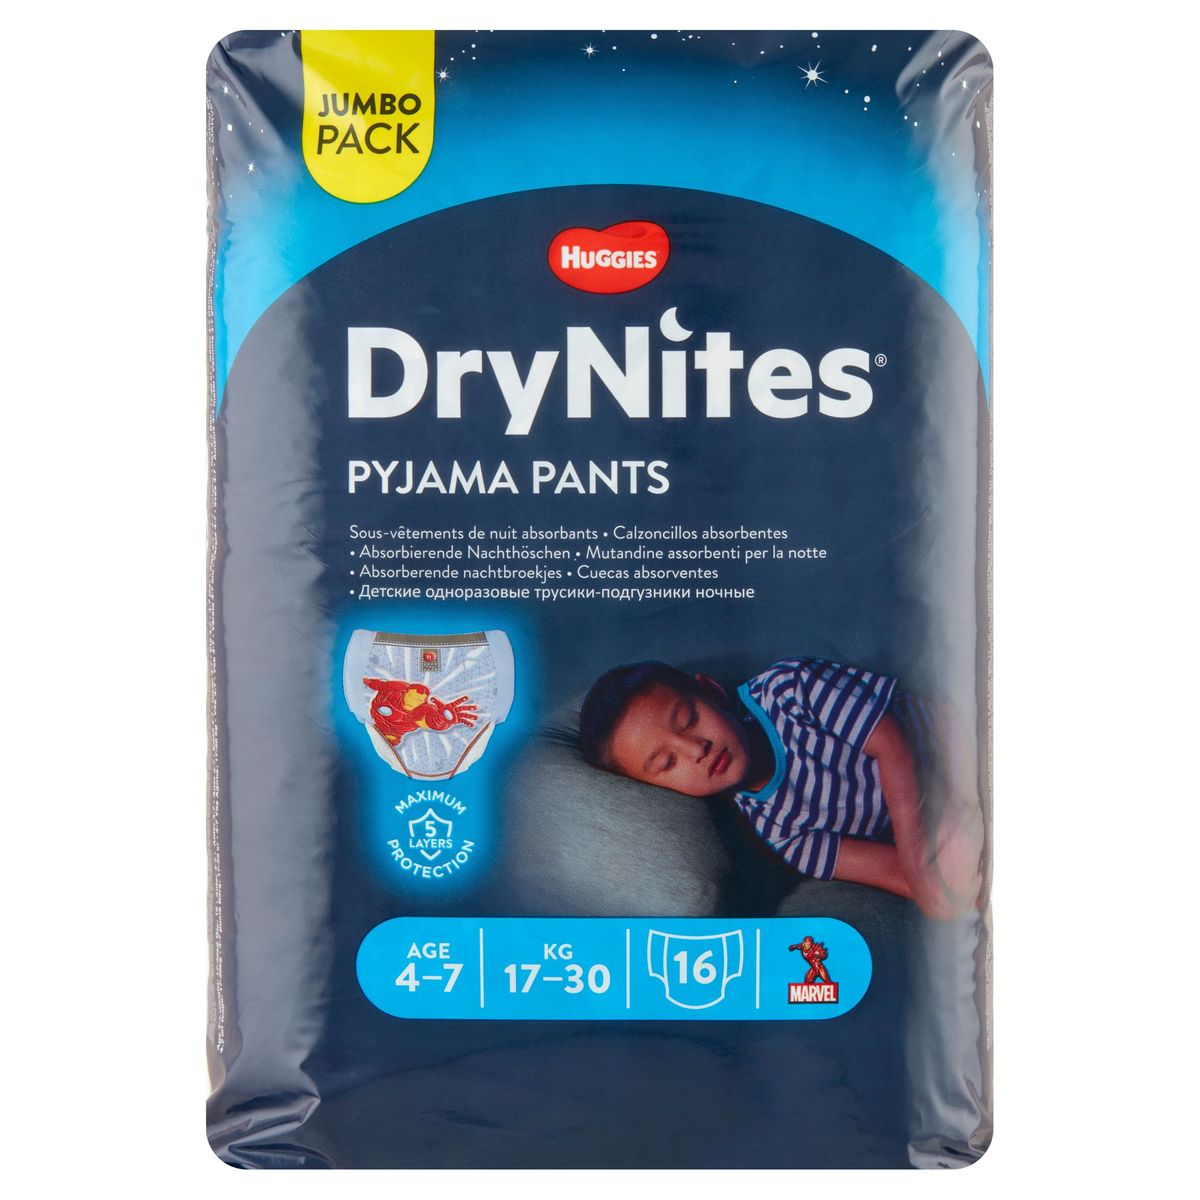 Huggies Drynites Absorberende Nachtbroekjes Age 4-7 17-30kg 16 Stuks